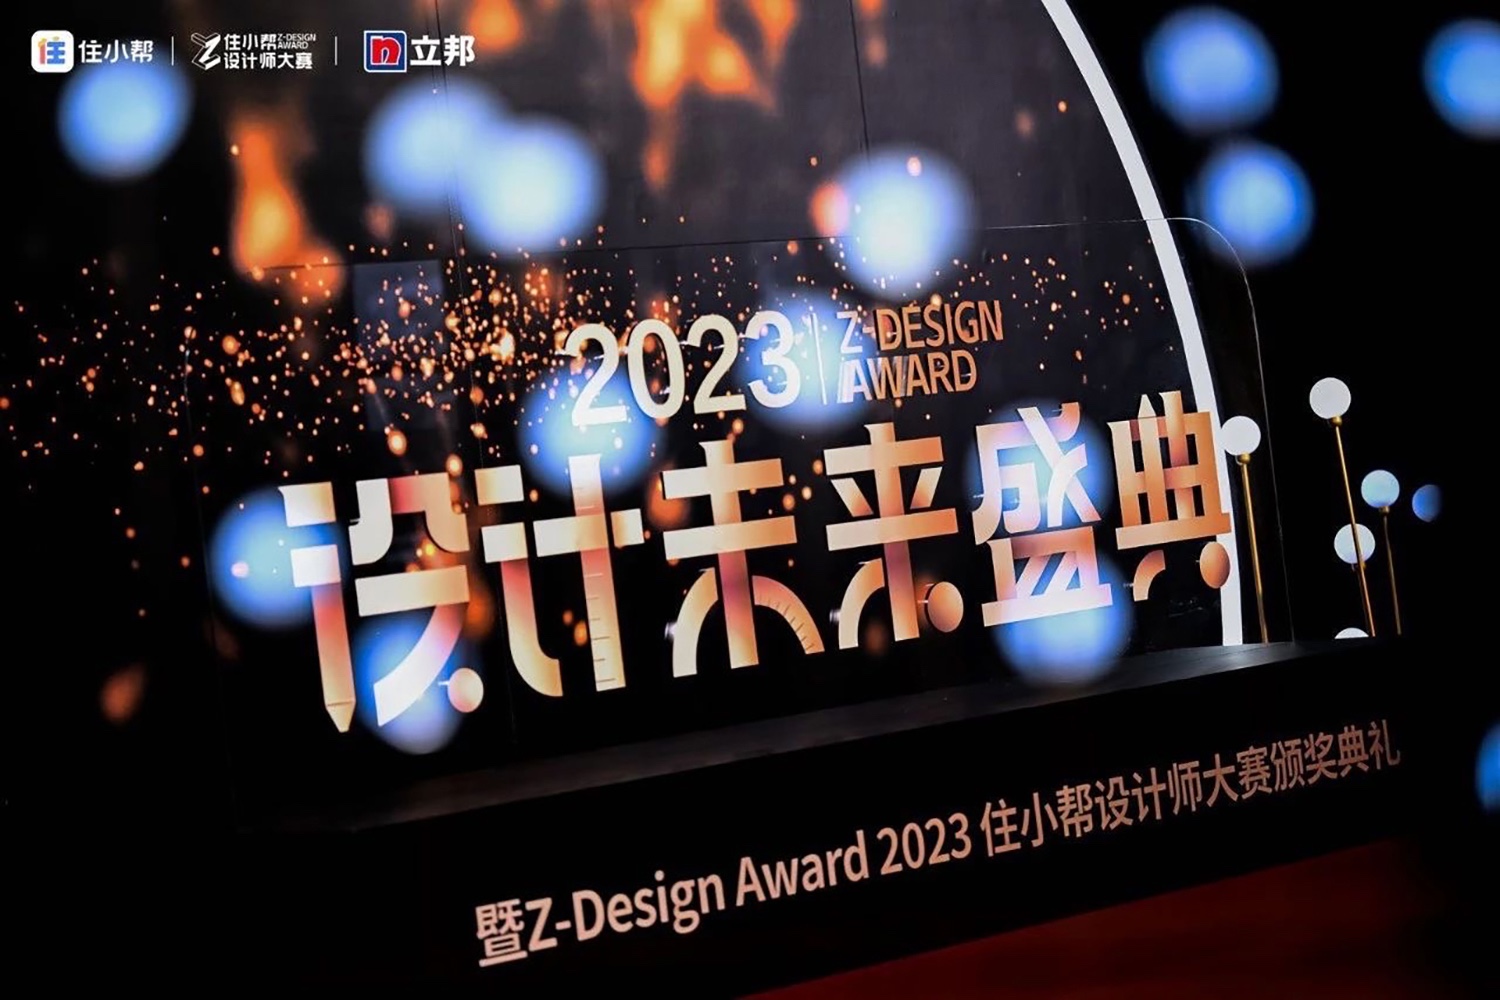 12月18日，Z-Design Award 2023年住小帮设计师大赛颁奖盛典在南京落下帷幕。这场由住小帮主办、立邦总冠名、首席特约品牌COLMO，特约合作品牌...